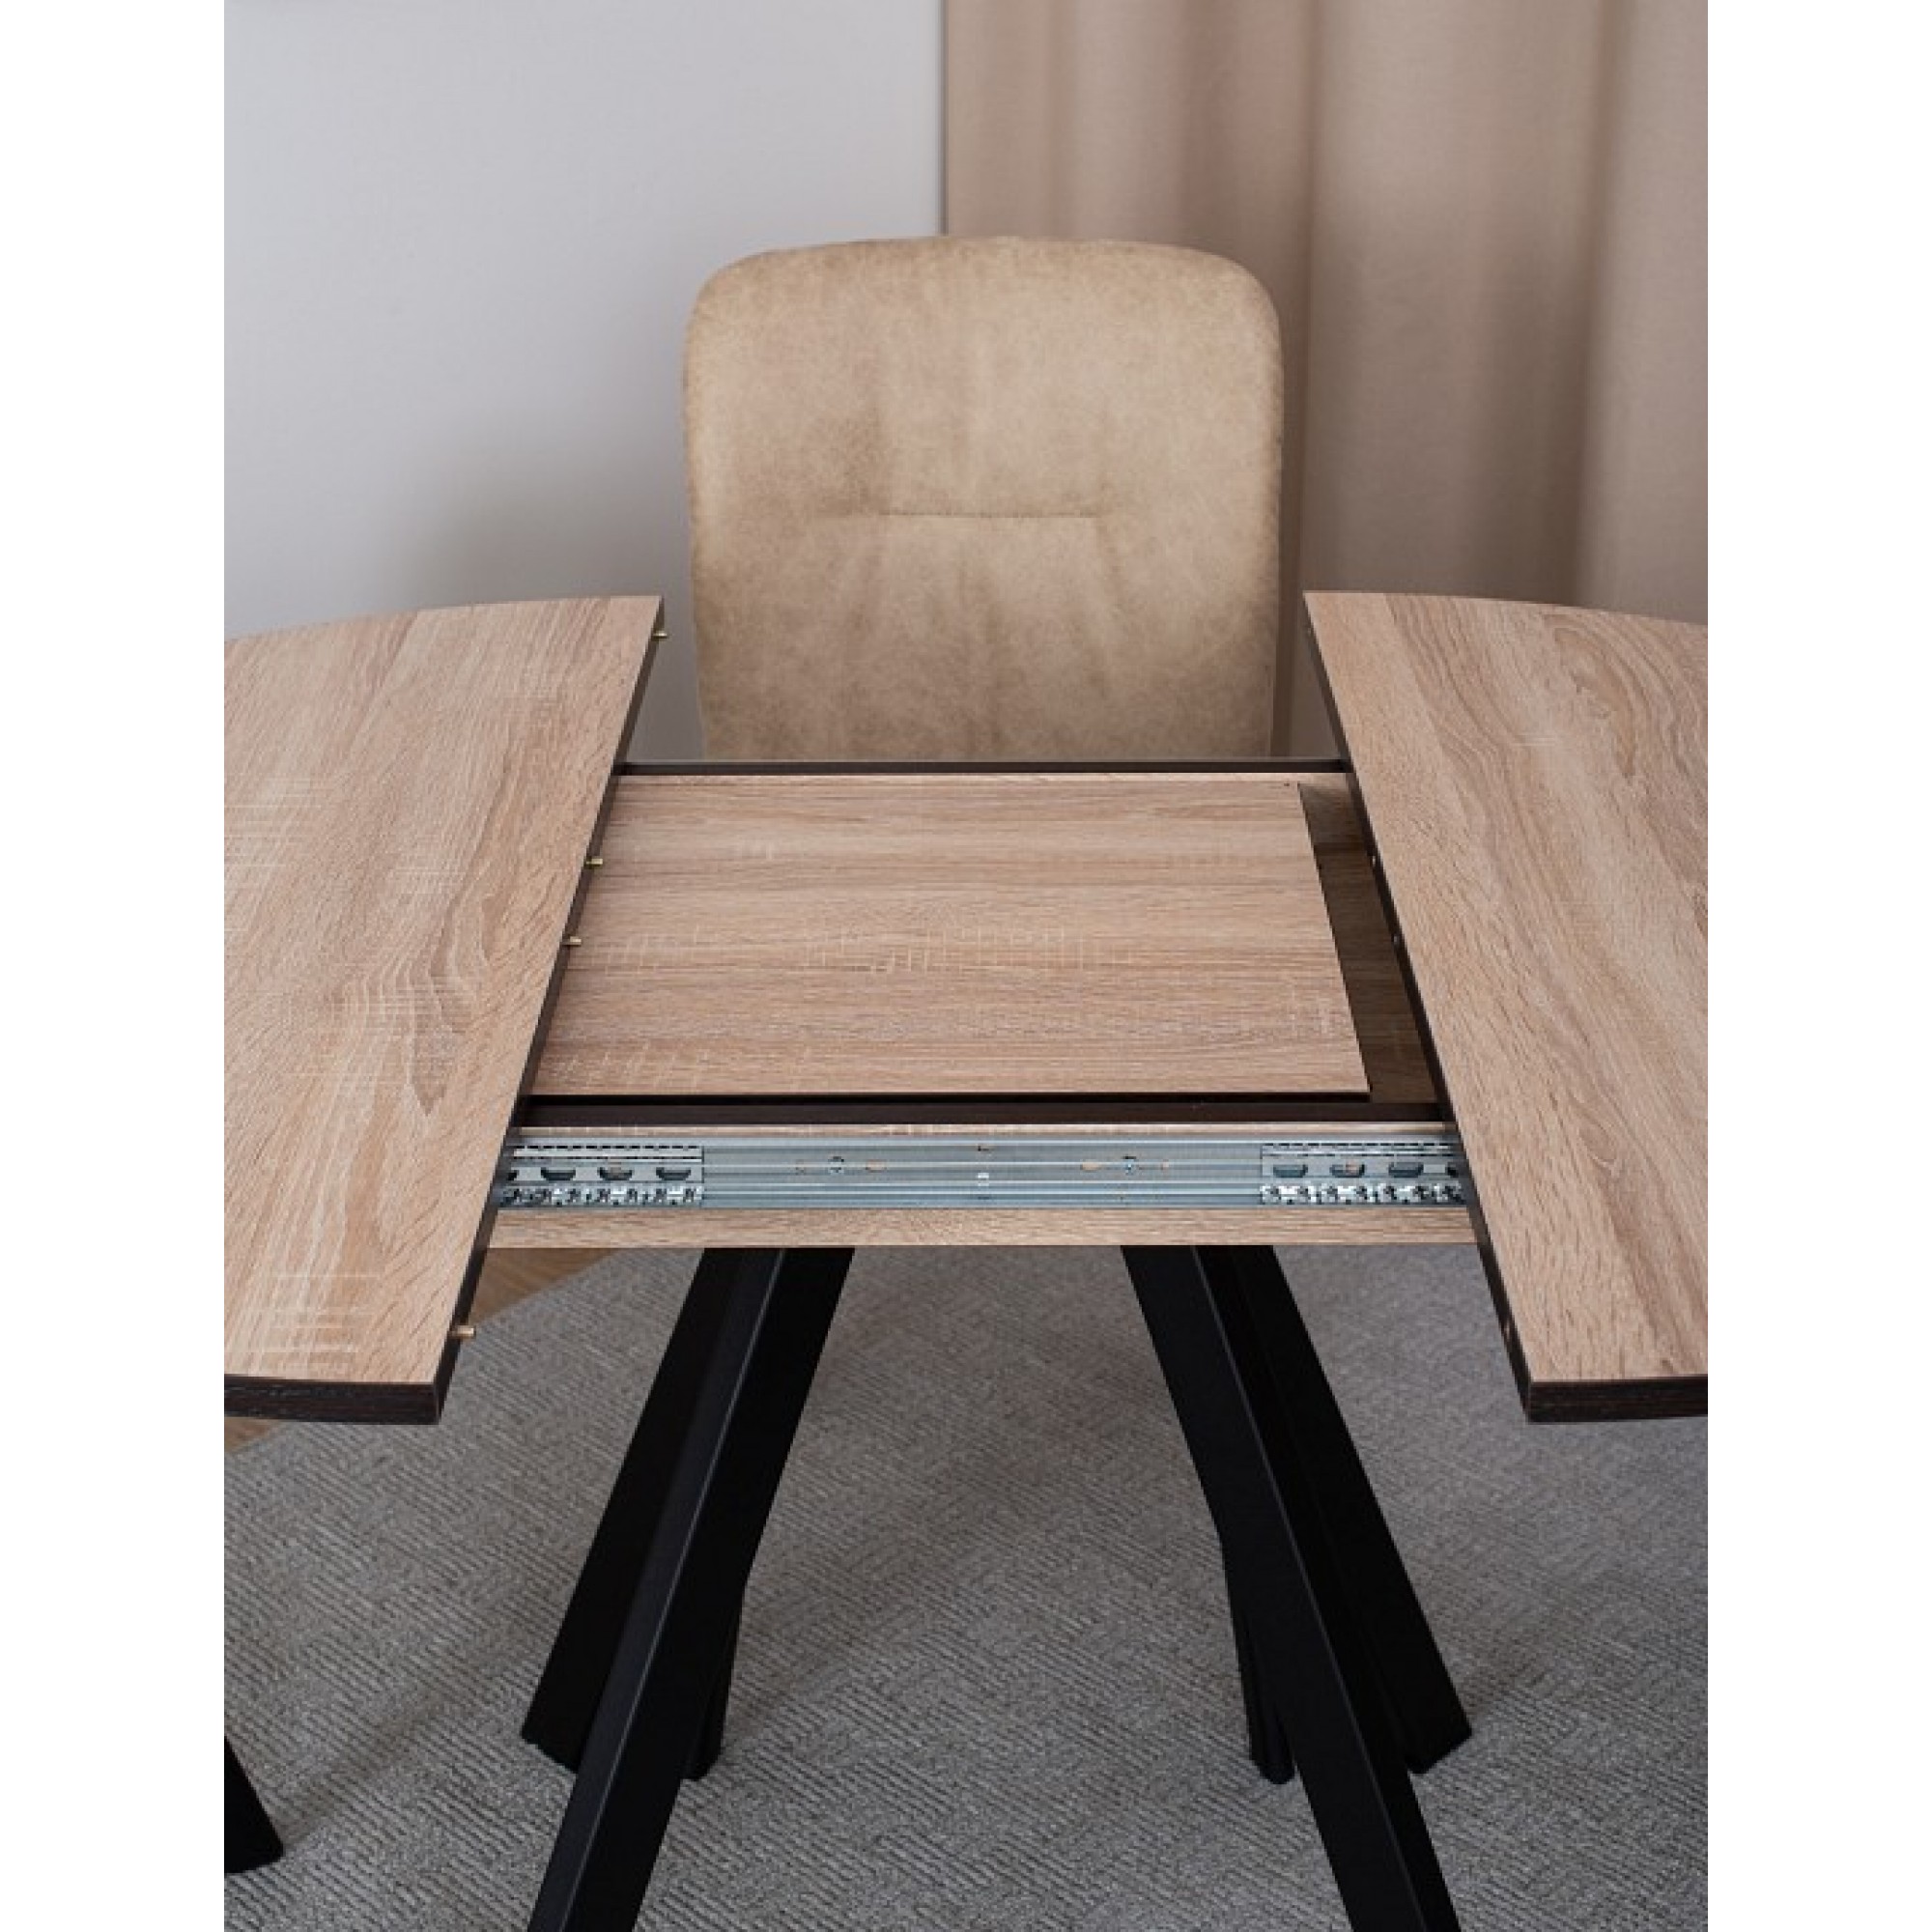 Стол обеденный Вита К древесина коричневая светлая орех DOM_Vita_K_OS_95_CHR